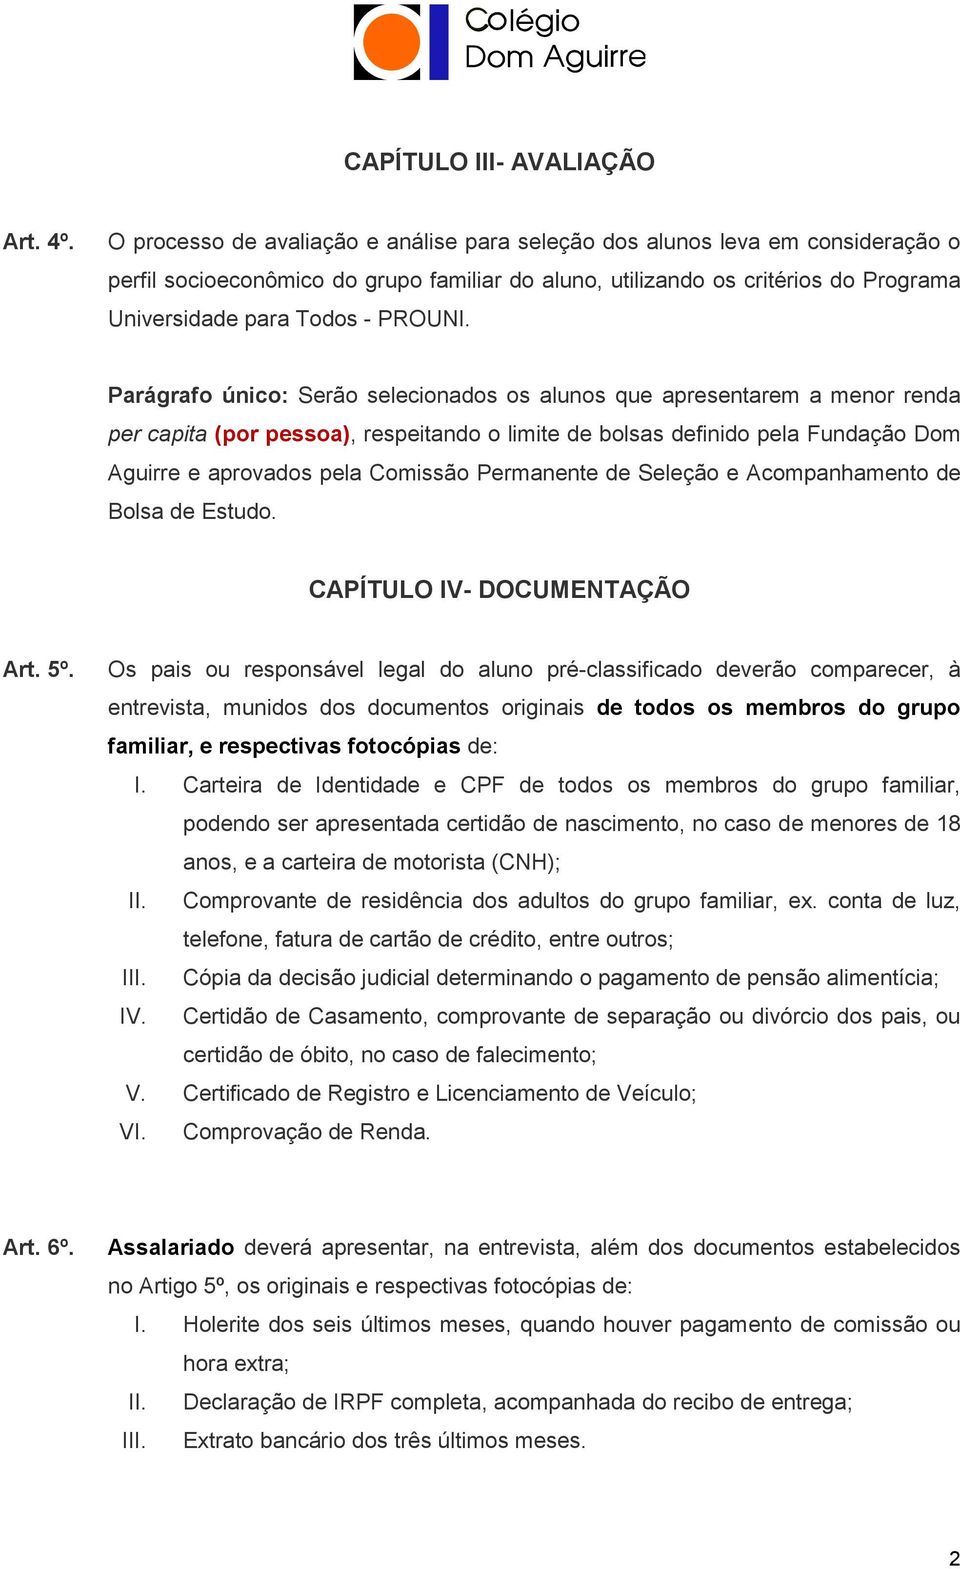 Parágrafo único: Serão selecionados os alunos que apresentarem a menor renda per capita (por pessoa), respeitando o limite de bolsas definido pela Fundação Dom Aguirre e aprovados pela Comissão